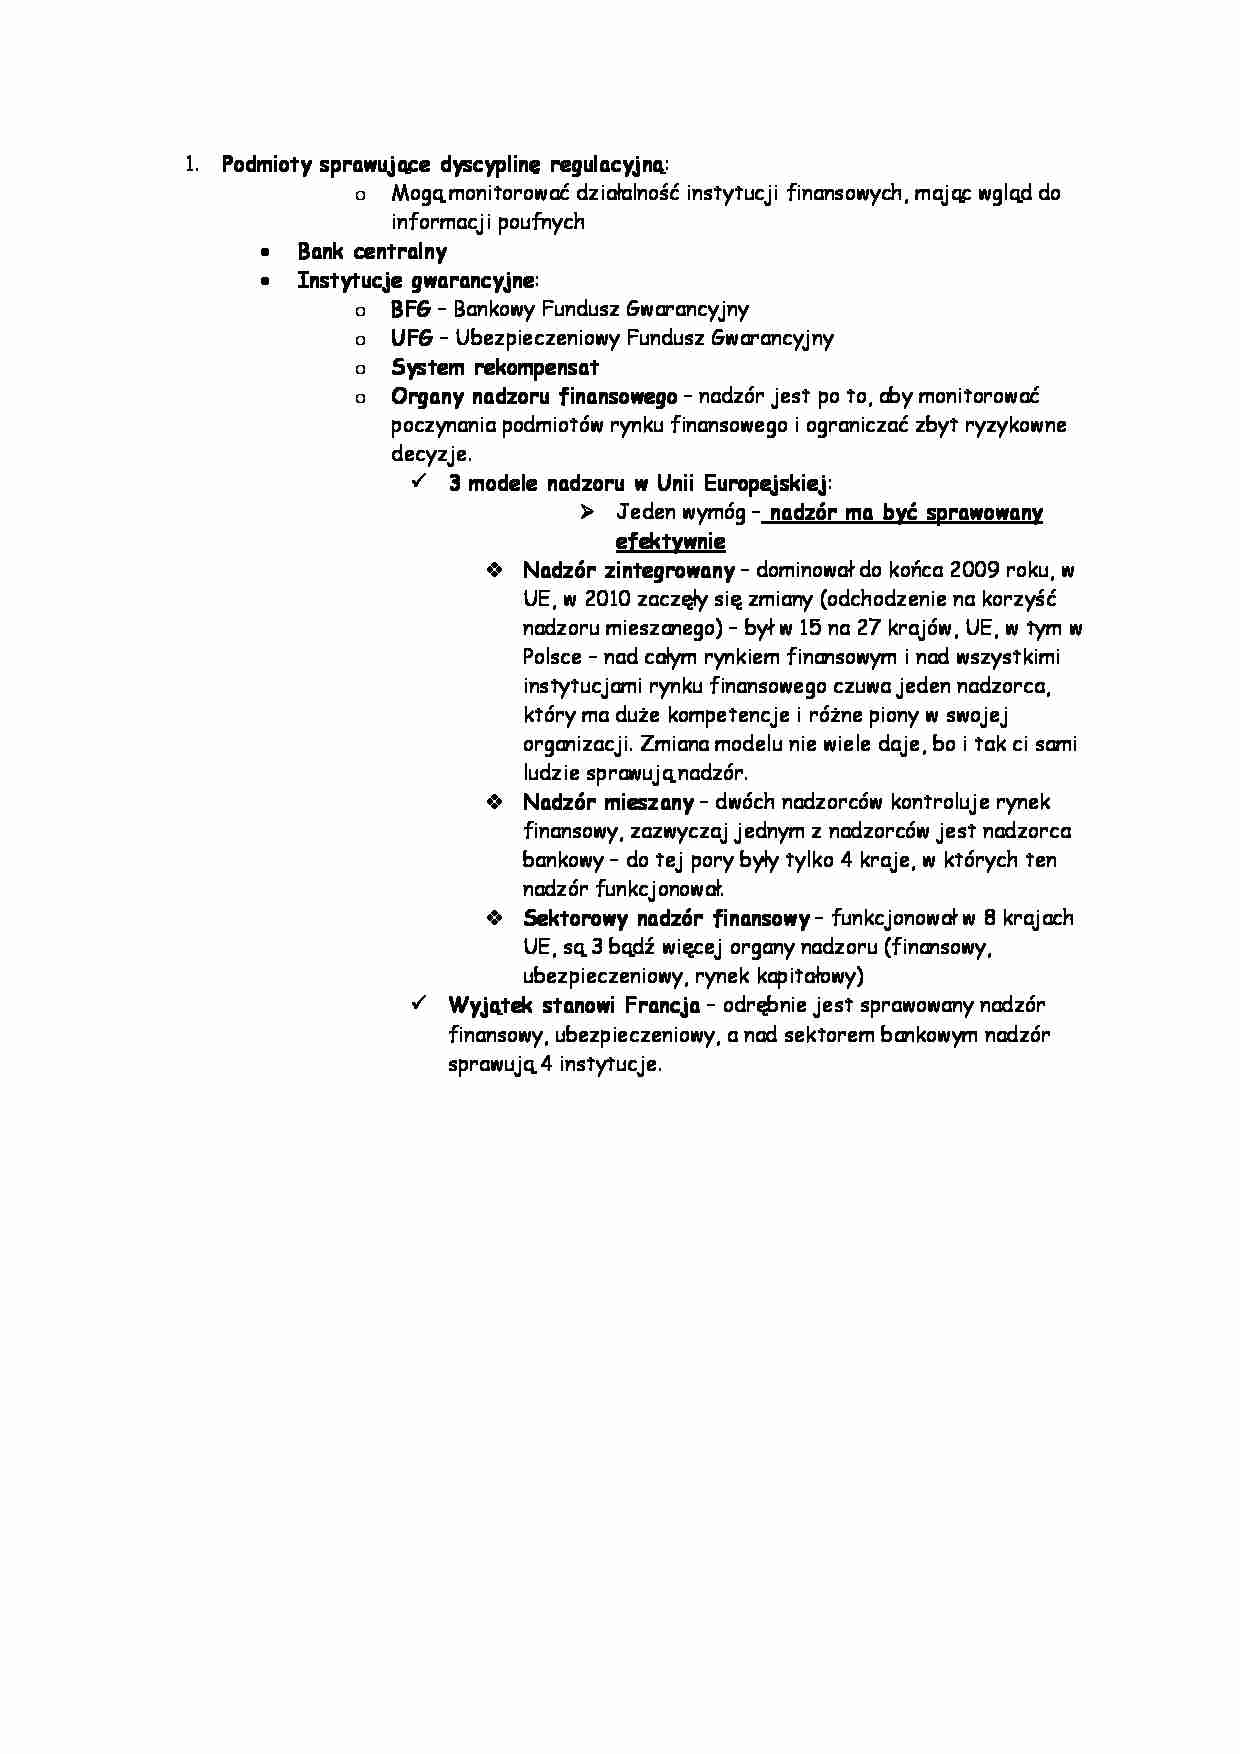 Podmioty sprawujące dyscyplinę regulacyjną - strona 1